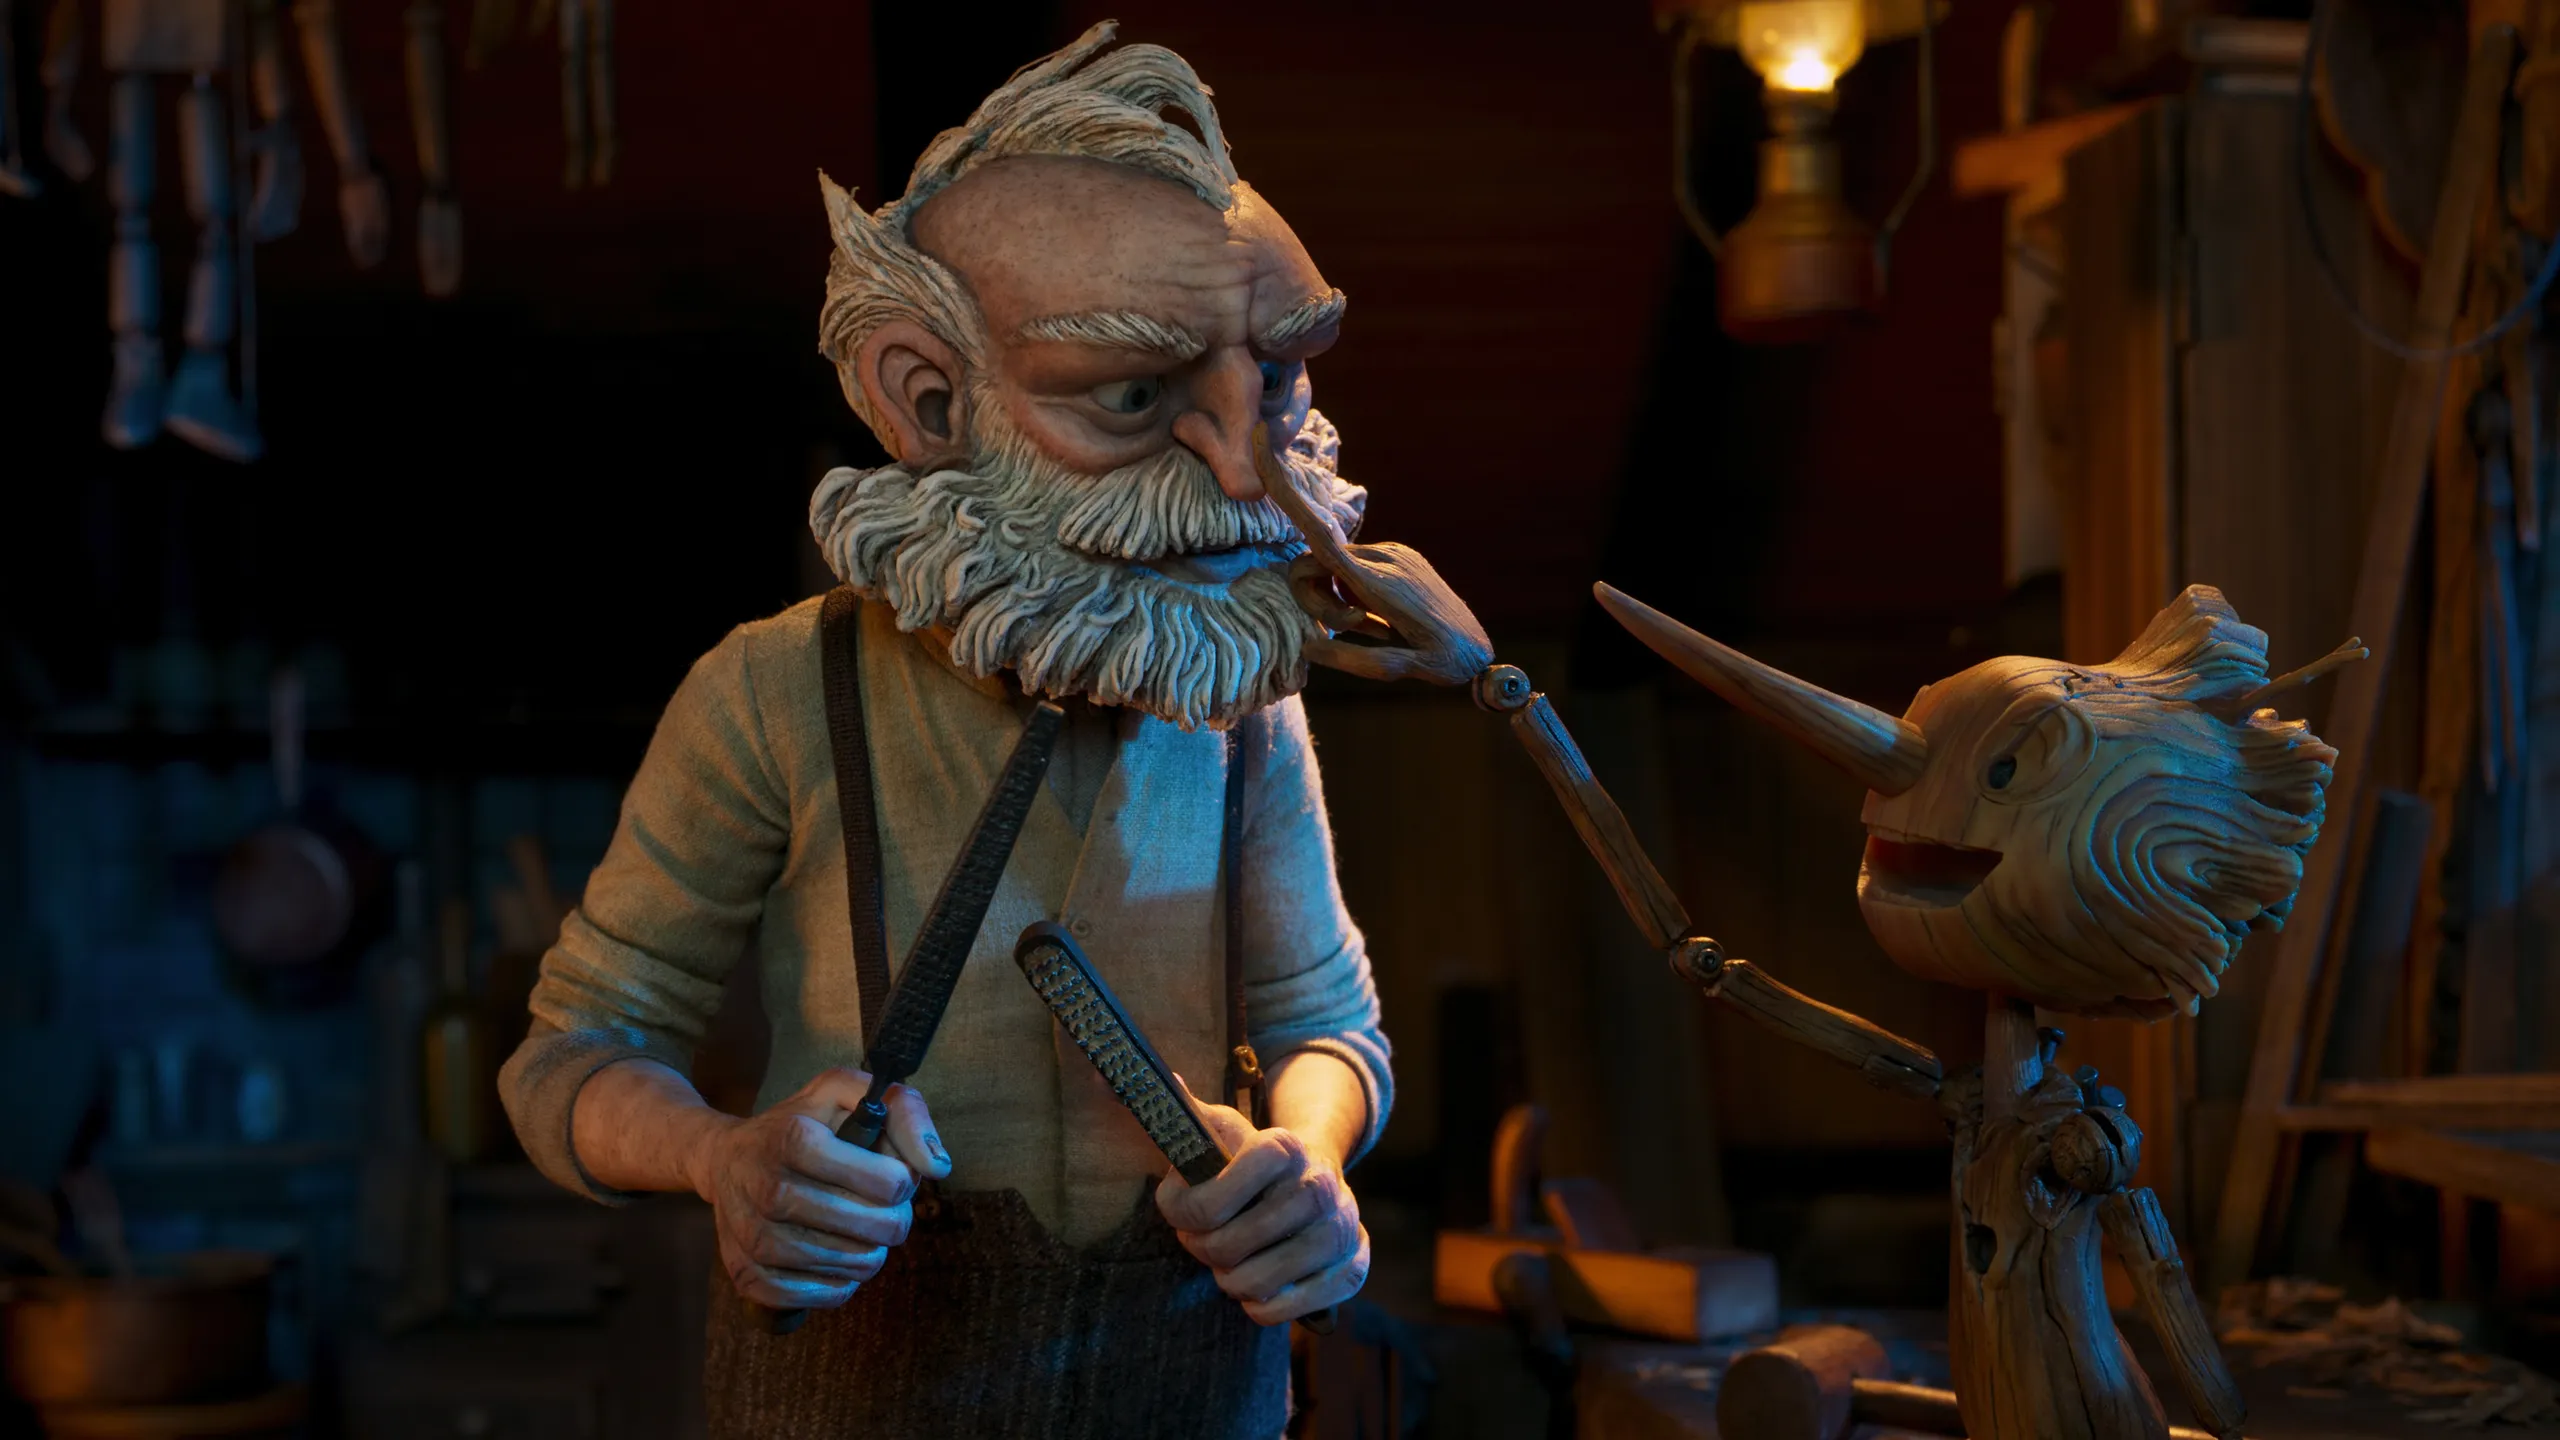 Alista las palomitas; Hoy se estrena Pinocho de Guillermo del Toro en Netflix